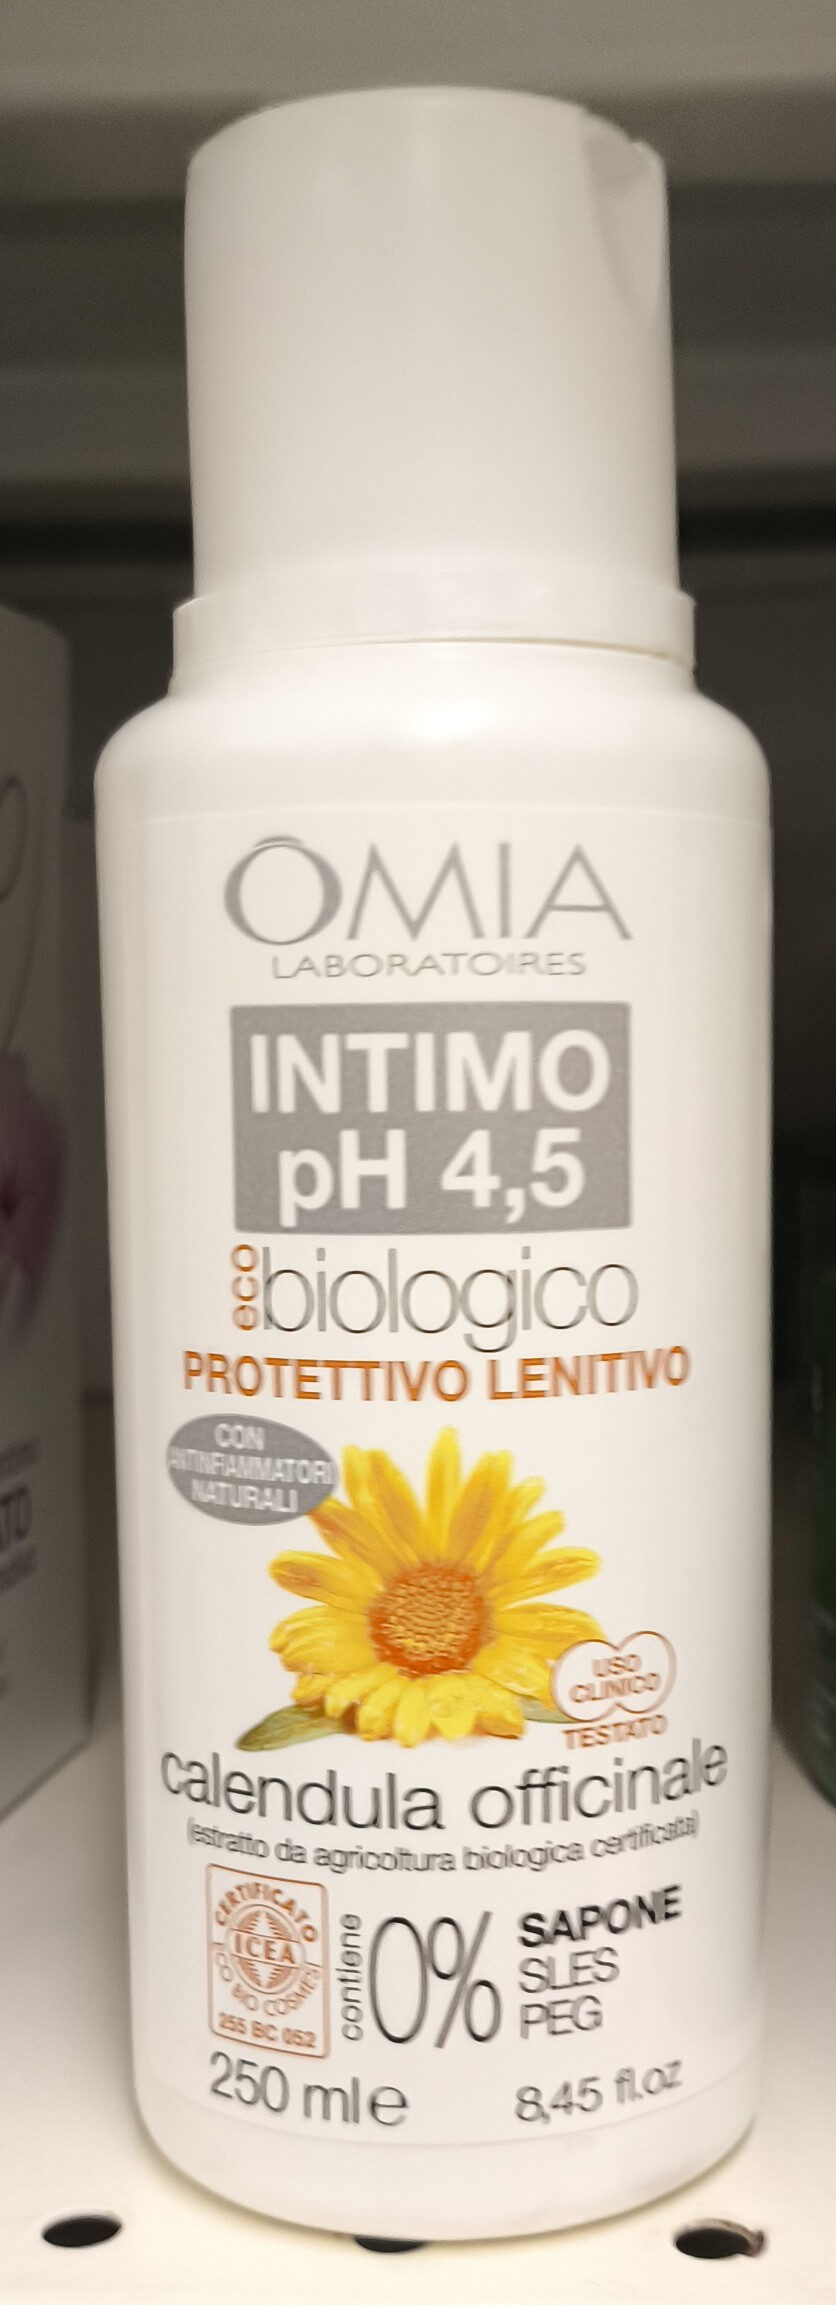 Intimo ph 4,5 - Produto - it